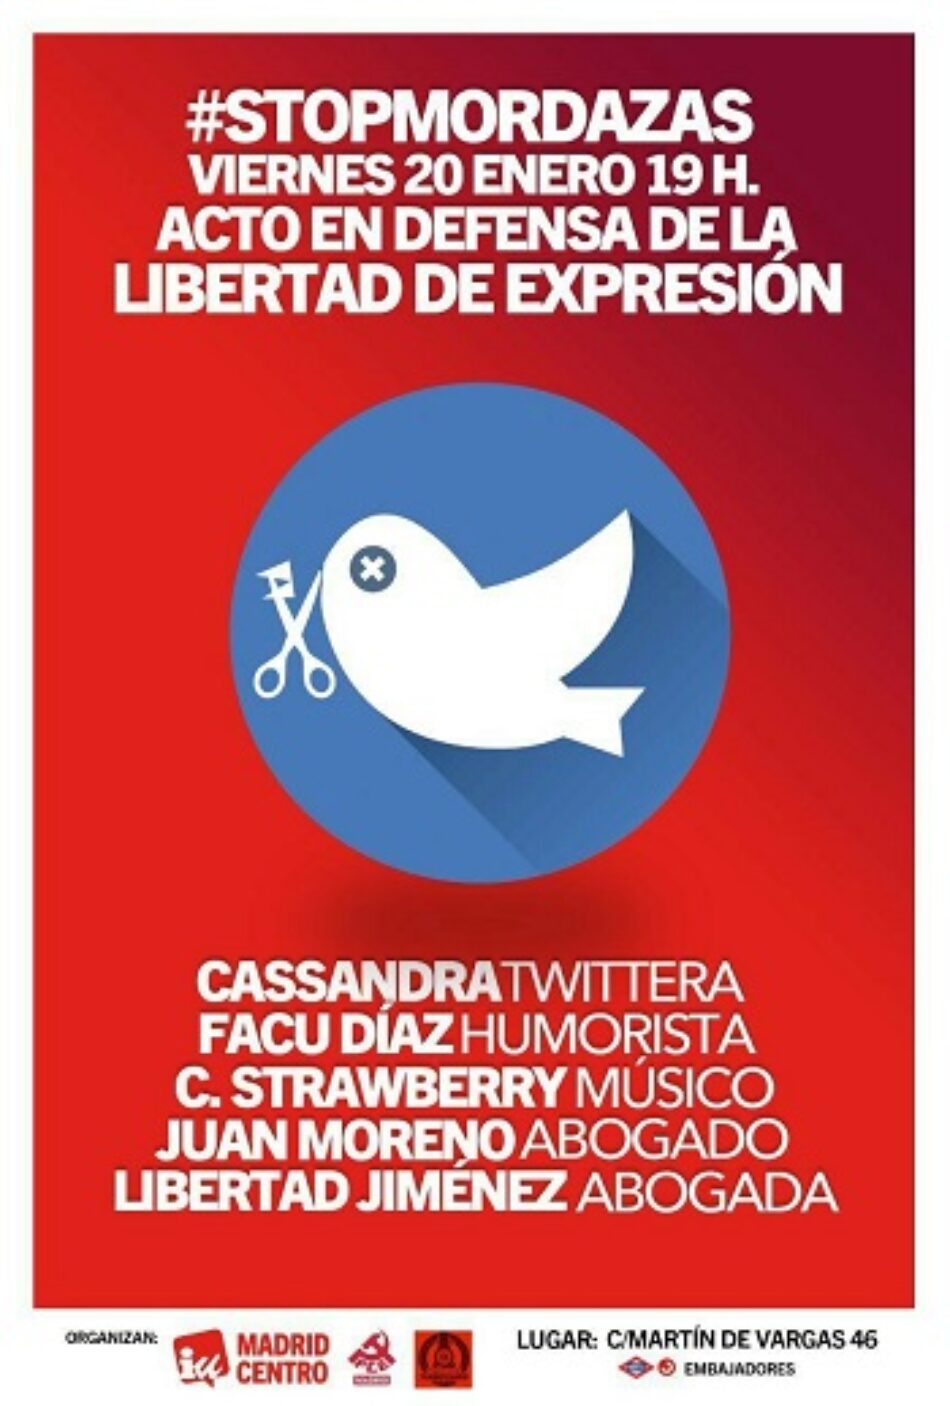 IU y el PCE organizan un acto en defensa de la libertad de expresión